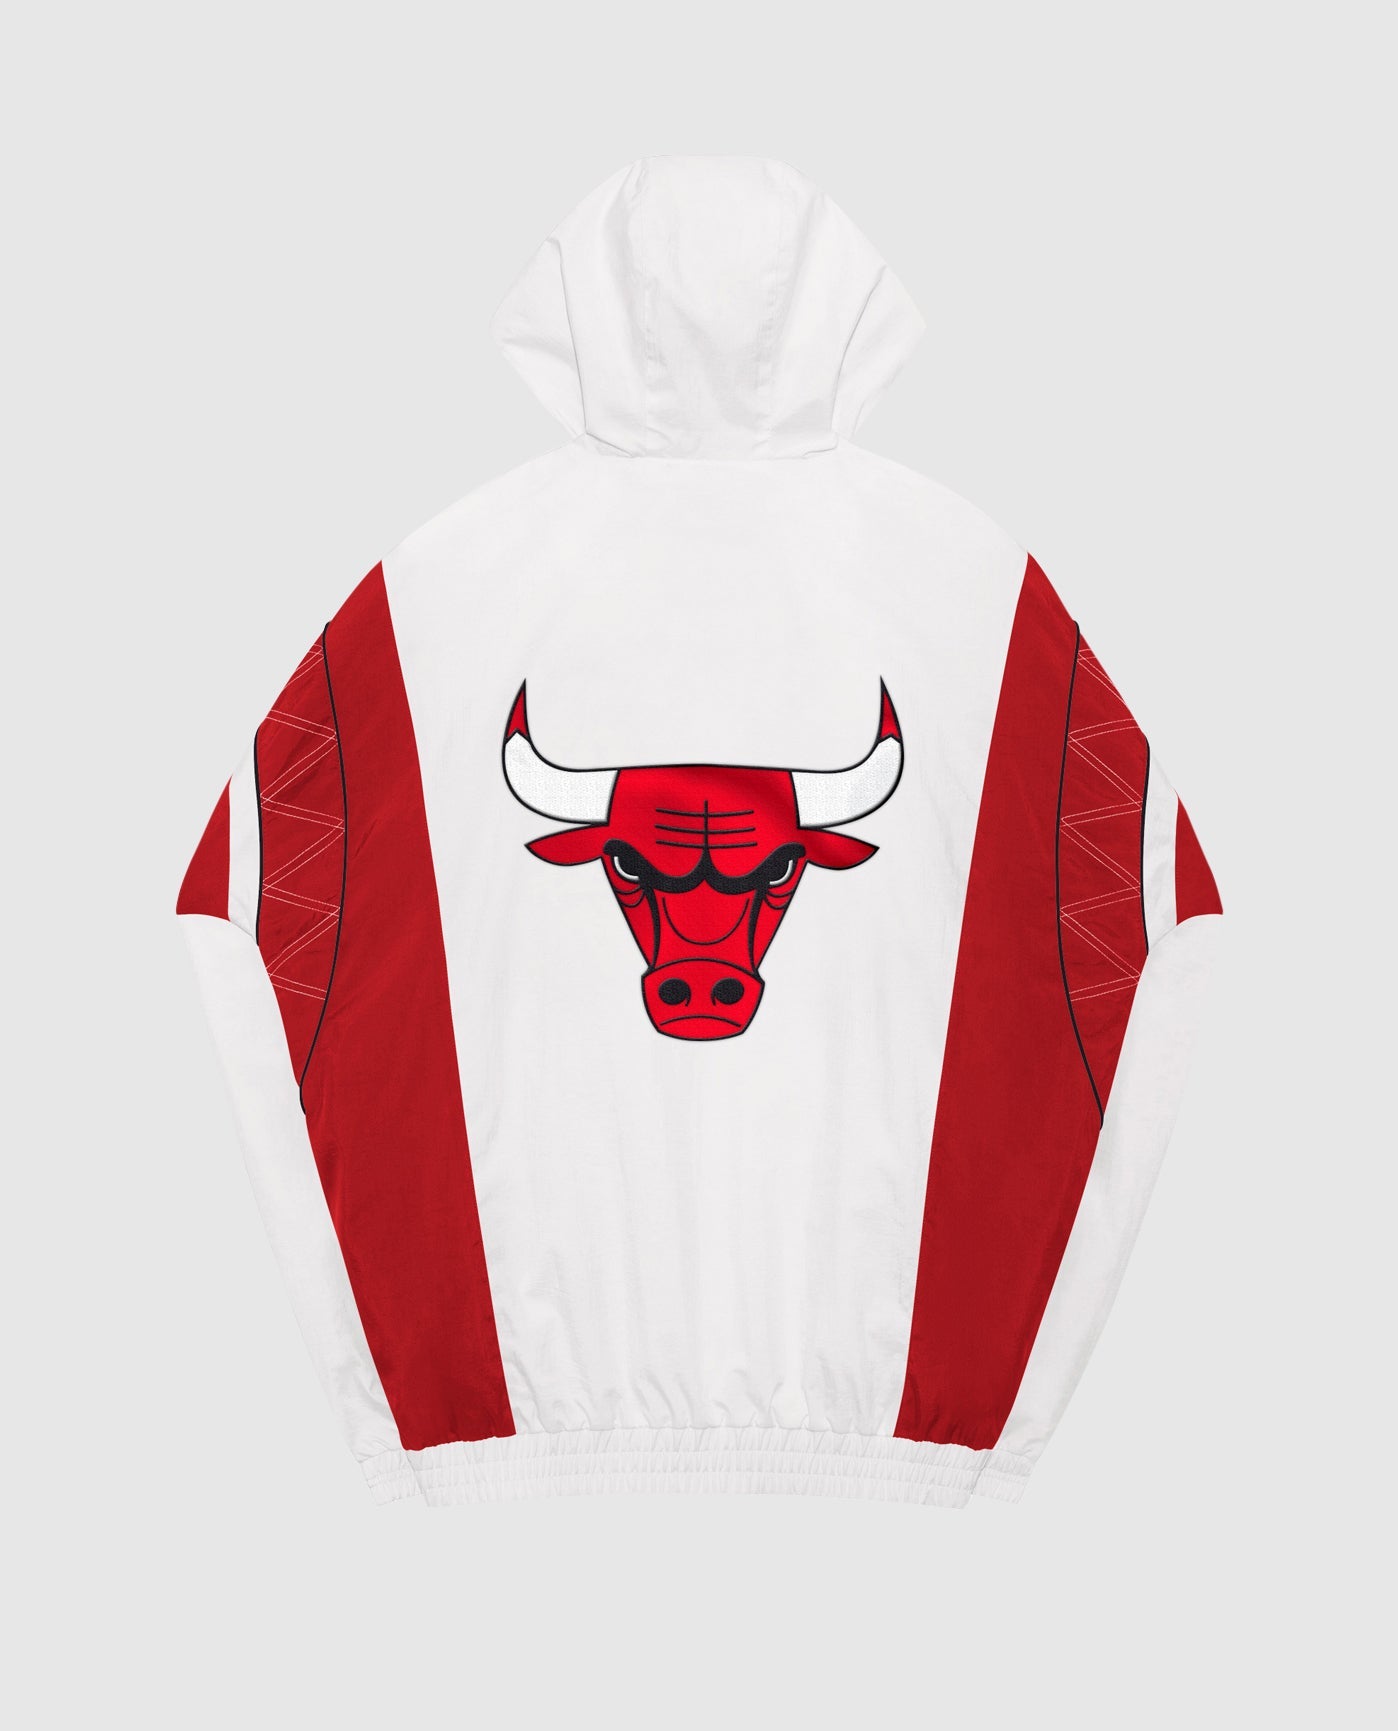 Men's Chicago Bulls Starter Red The Star Vintage Full-Zip Jacket